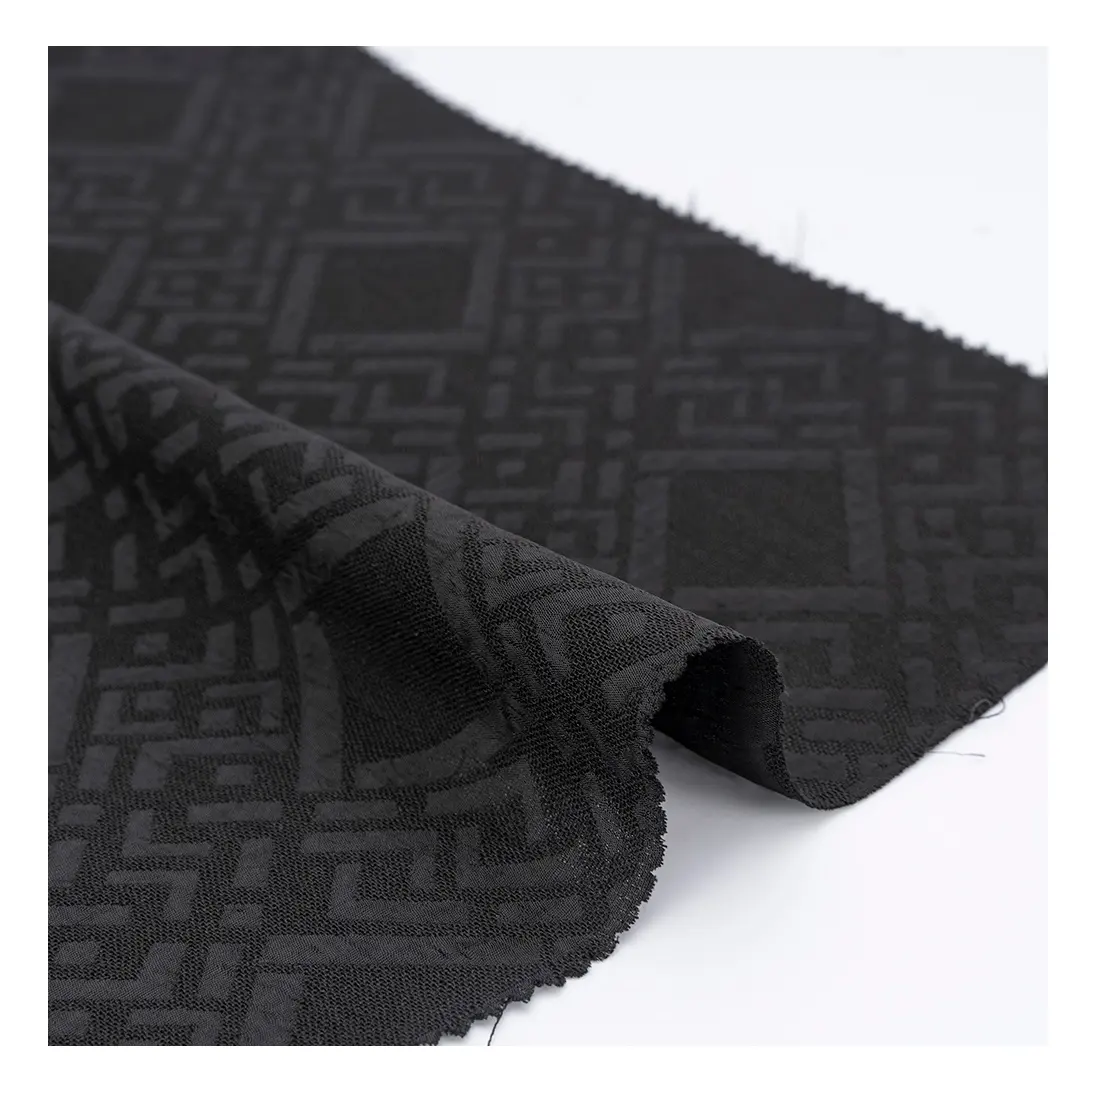 ABAYA FABRIC FABRICANTE SUMINISTRO Ropa de alta gama de Oriente Medio tela abaya 100% poliéster tela resistente al desgaste de alta calidad